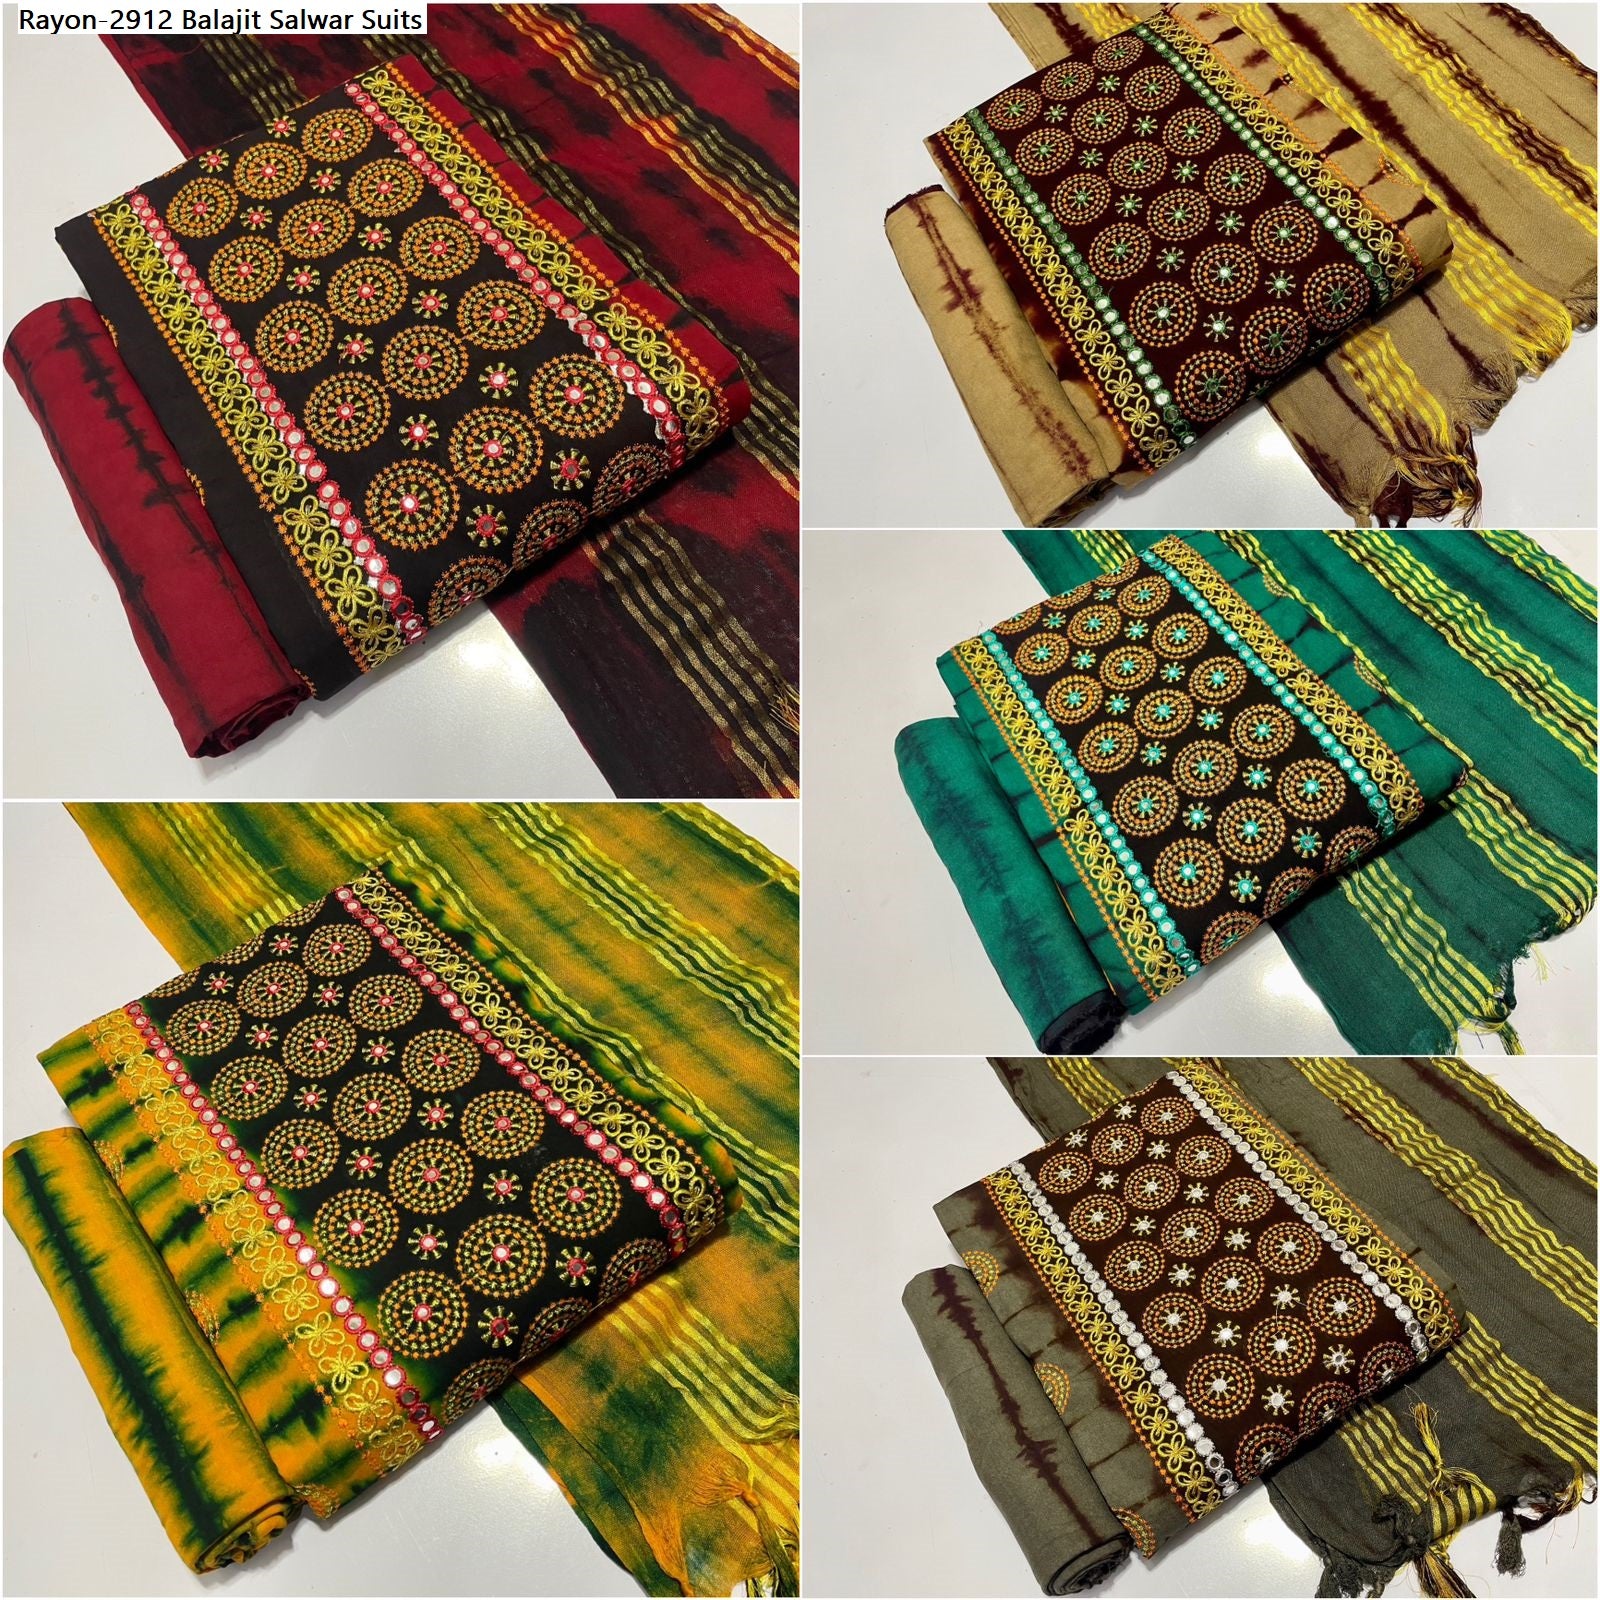 Rayon-2912 Balajit Tie Dye Salwar Suits